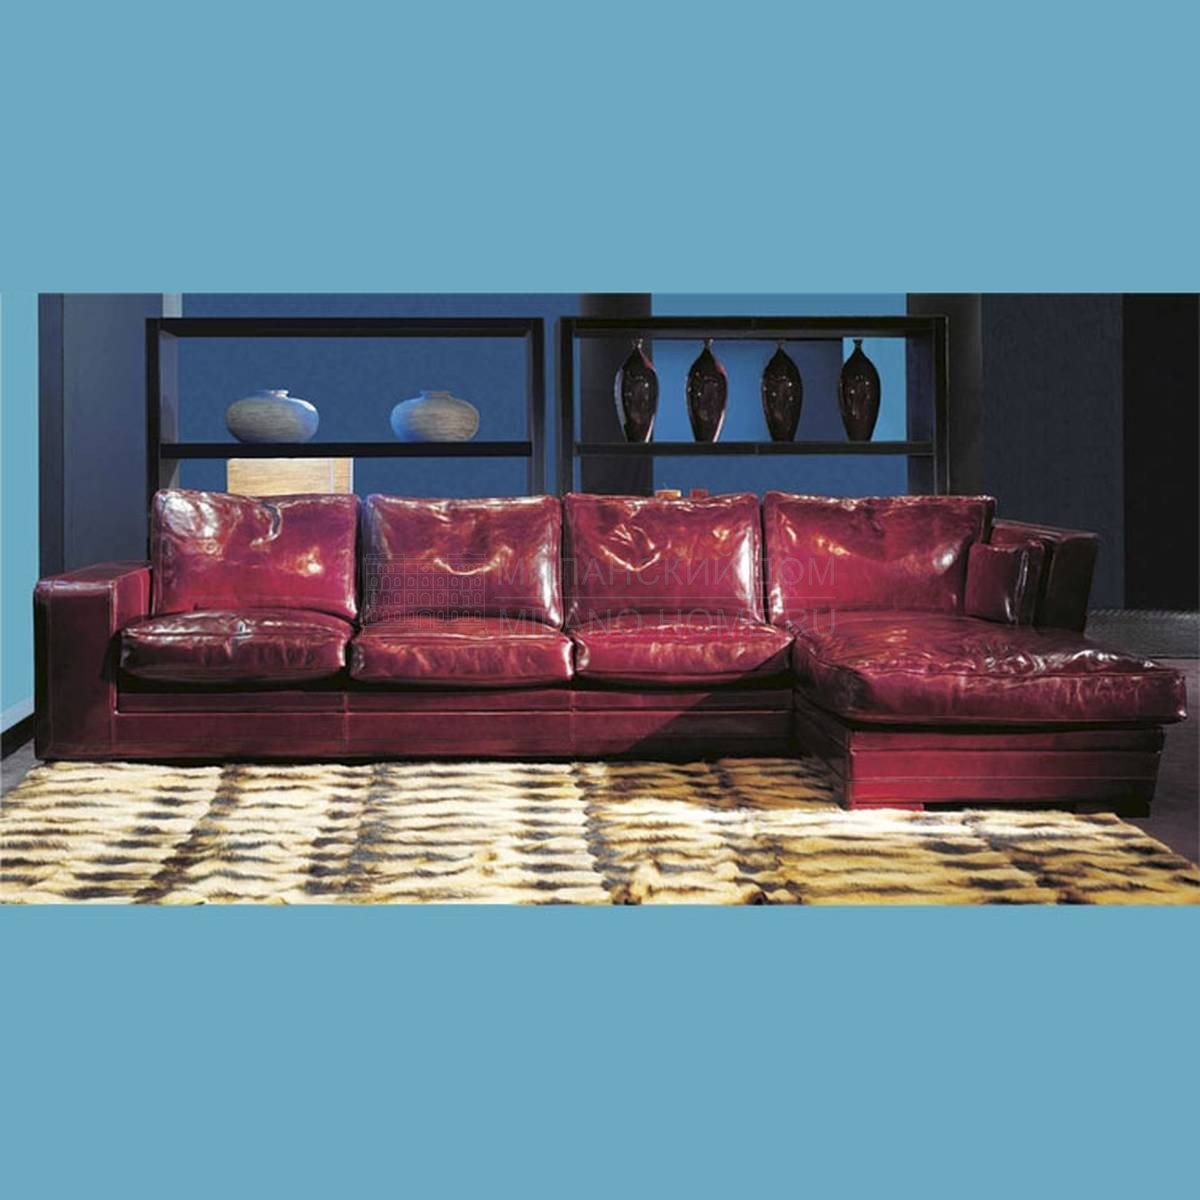 Модульный диван Rex Sofa из Италии фабрики ULIVI